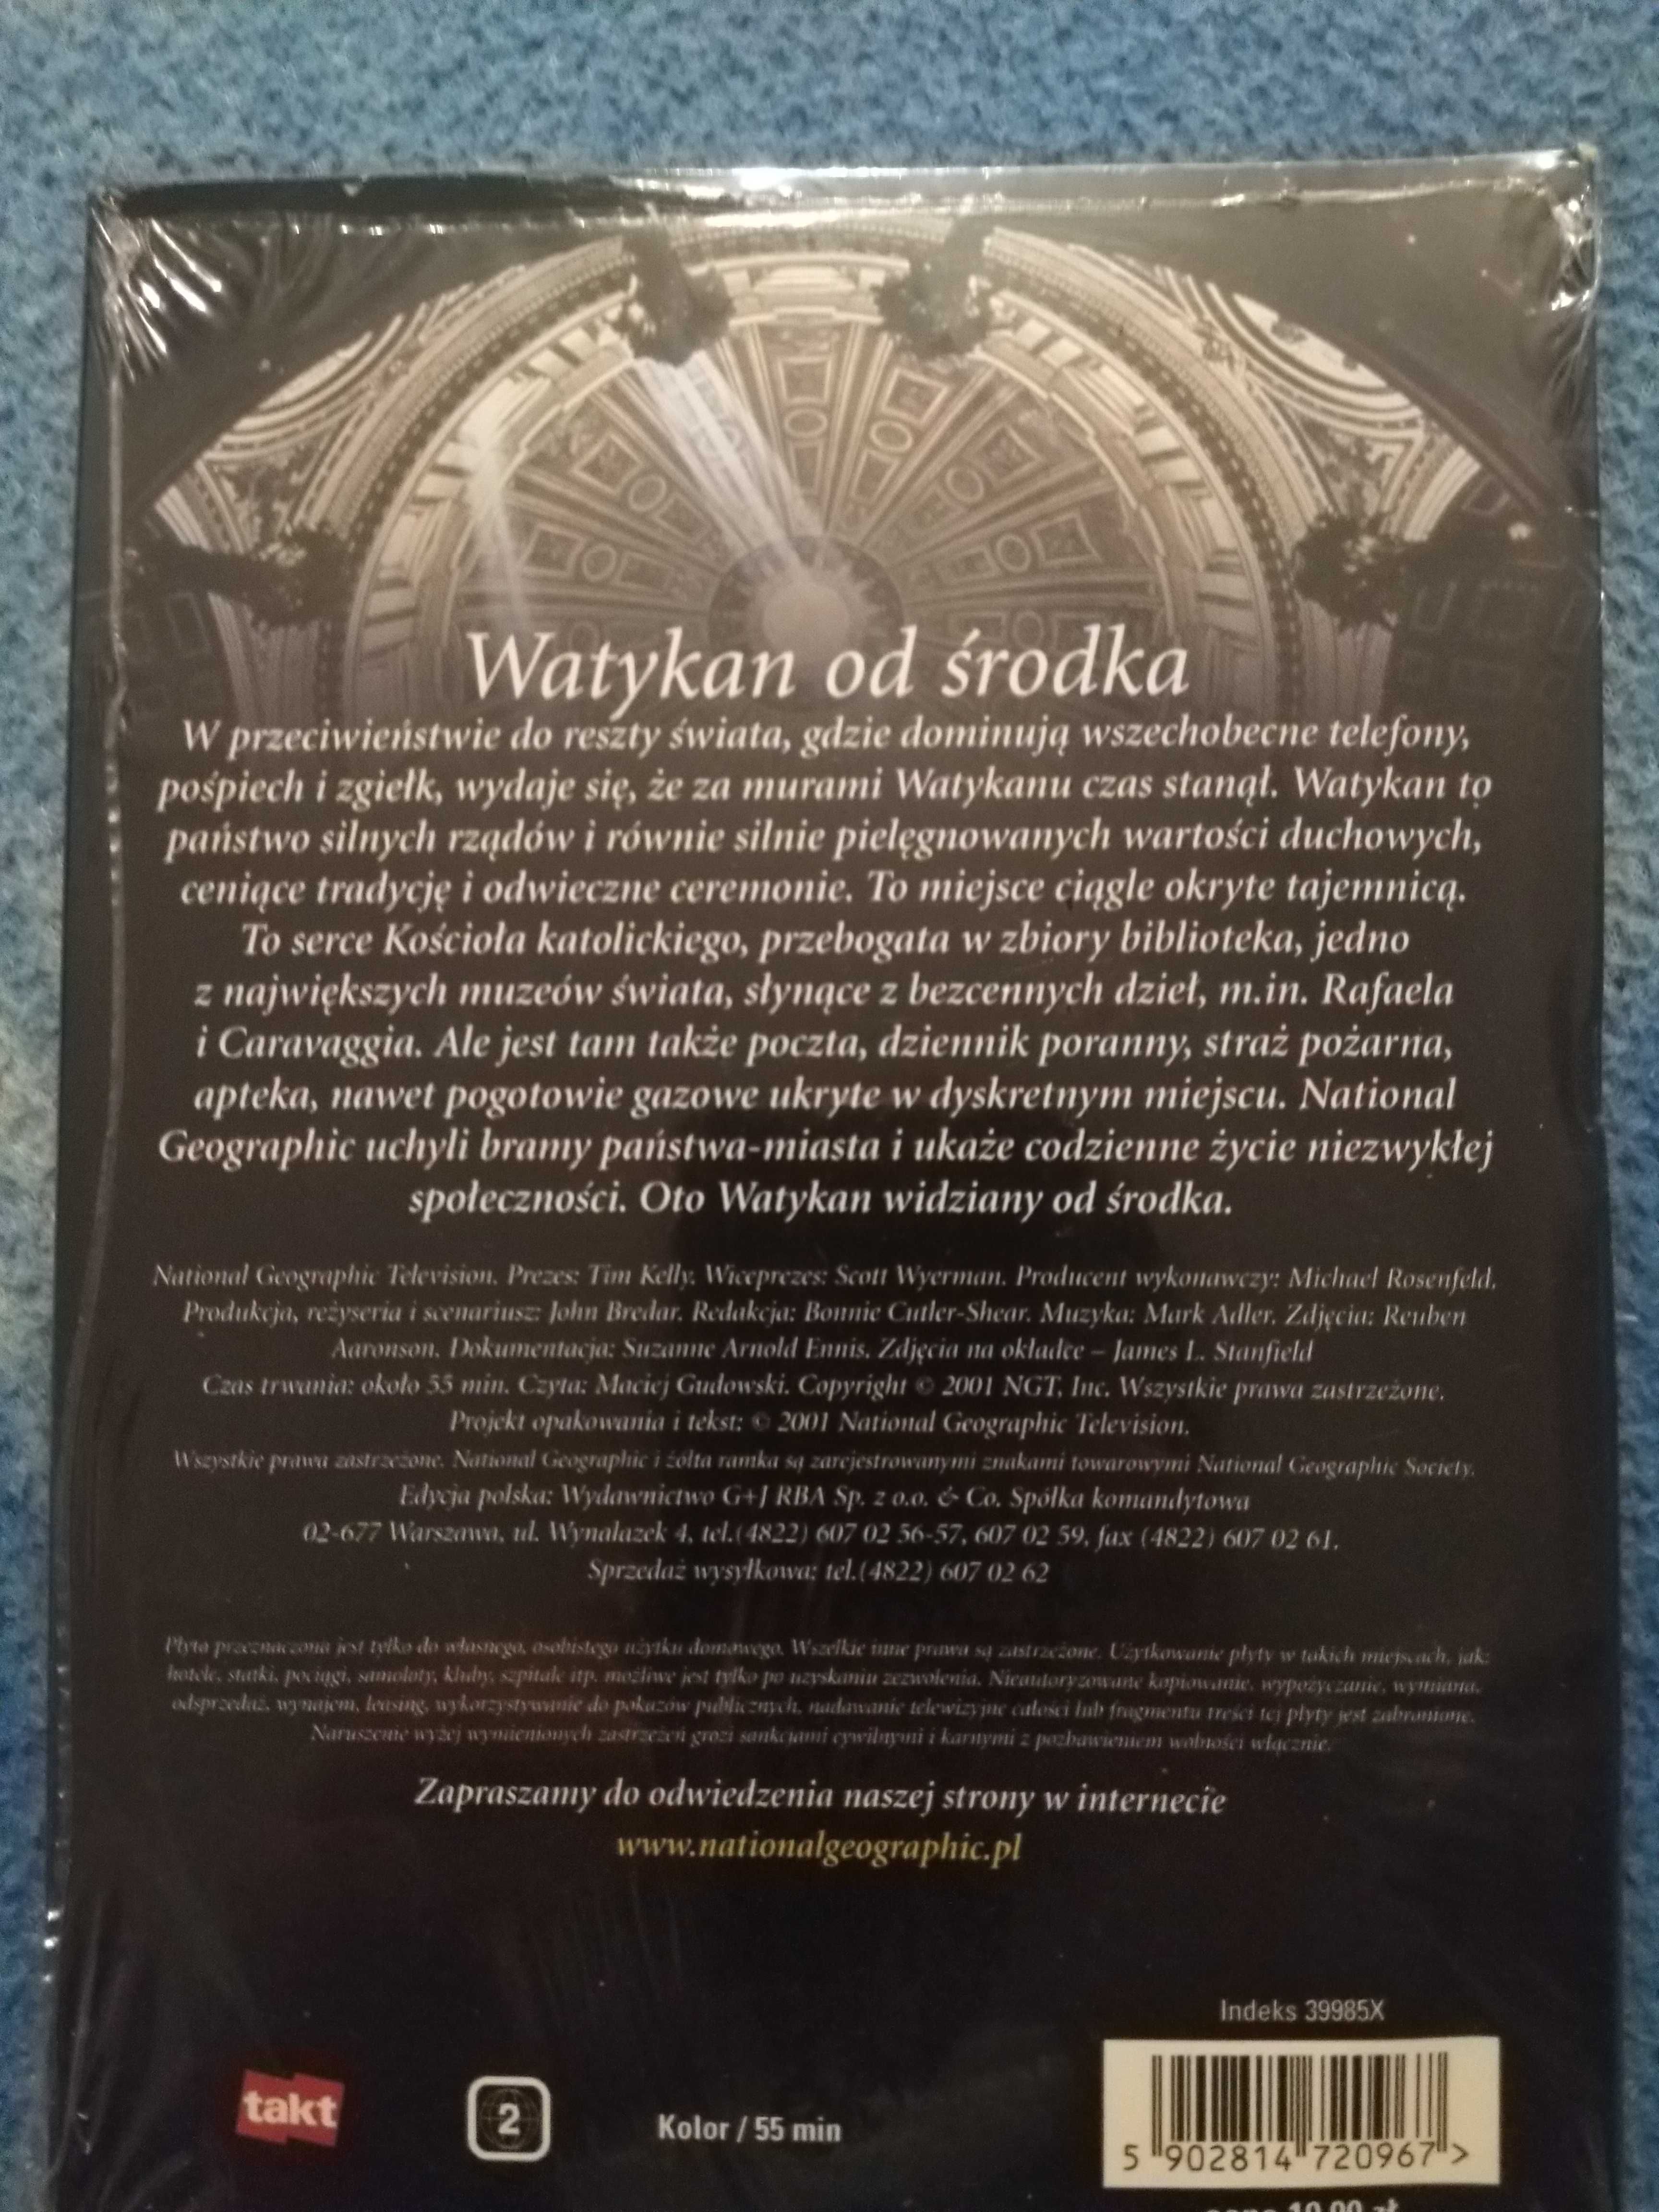 Watykan od srodka - nowa płyta dvd Jan Paweł II